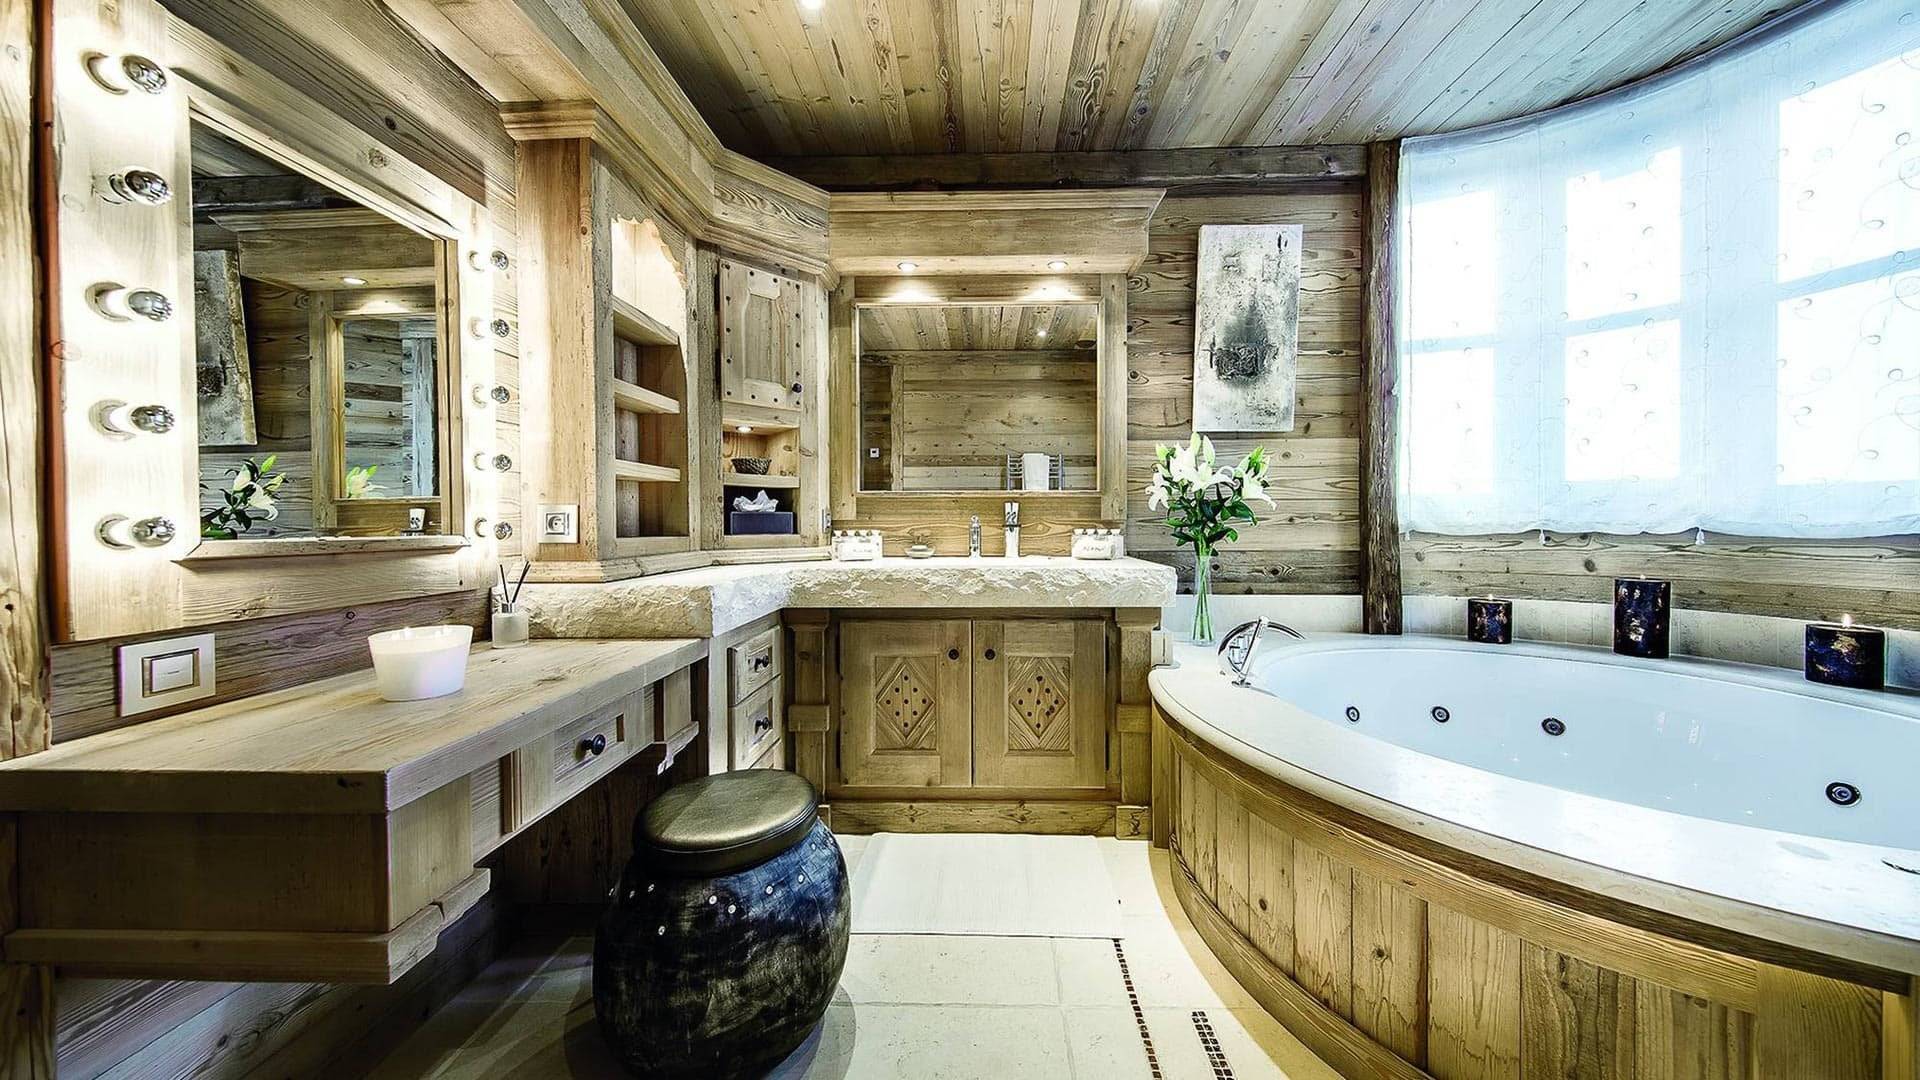 Большая ванная комната - 100 фото эксклюзивных новинок дизайна